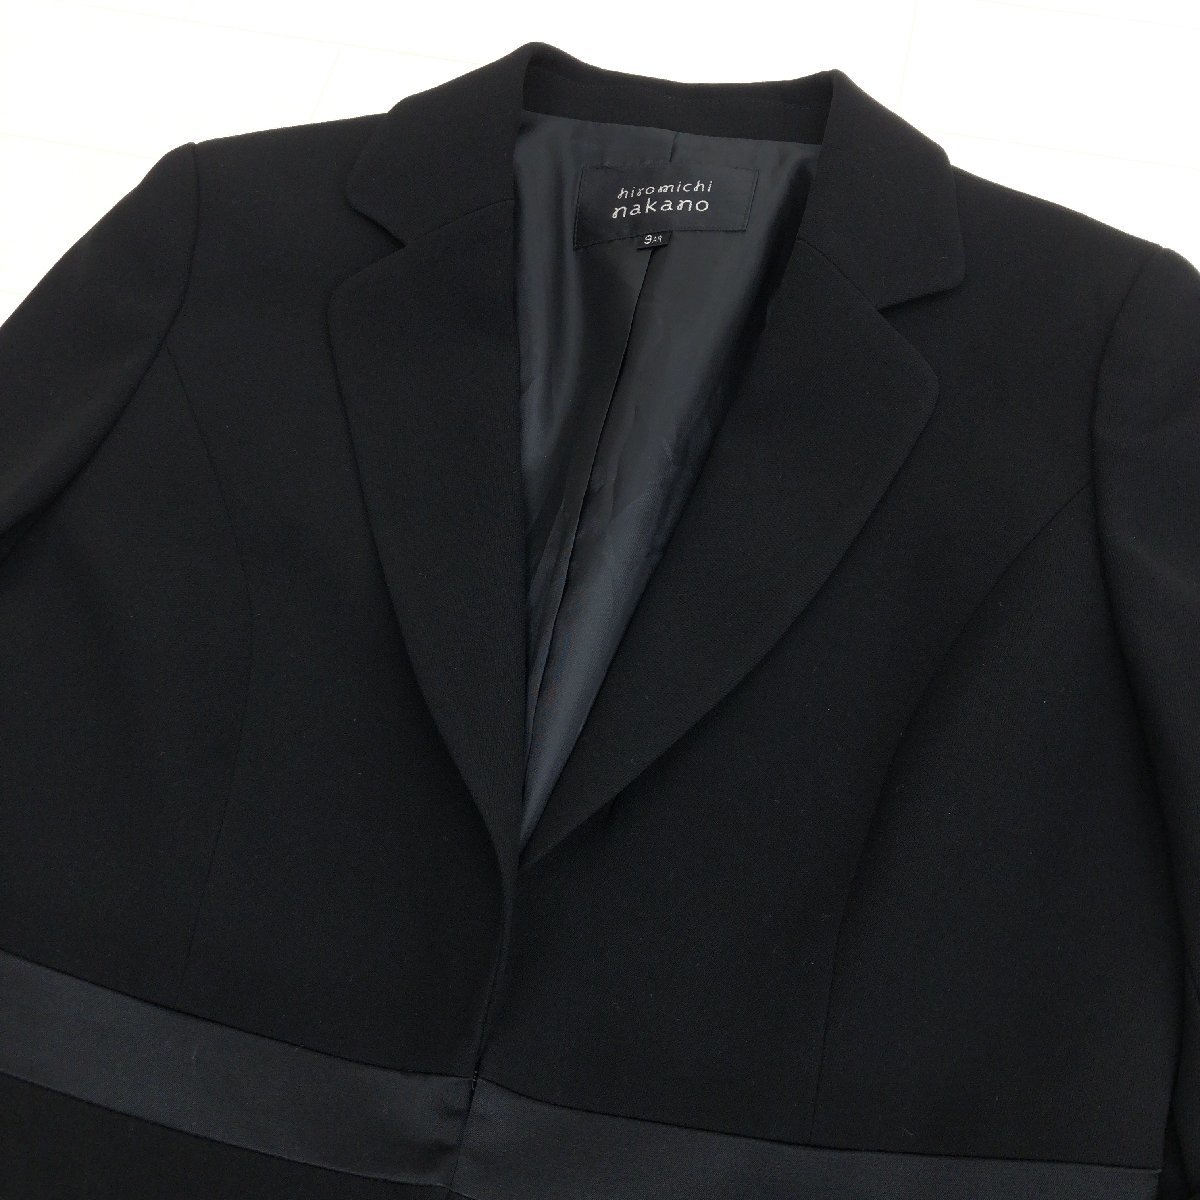 ●美品 hiromichi nakano ヒロミチナカノ ワンピース アンサンブル 9AR(M相当) 黒 ジャケット 喪服 礼服 ブラックフォーマル スーツ_画像5